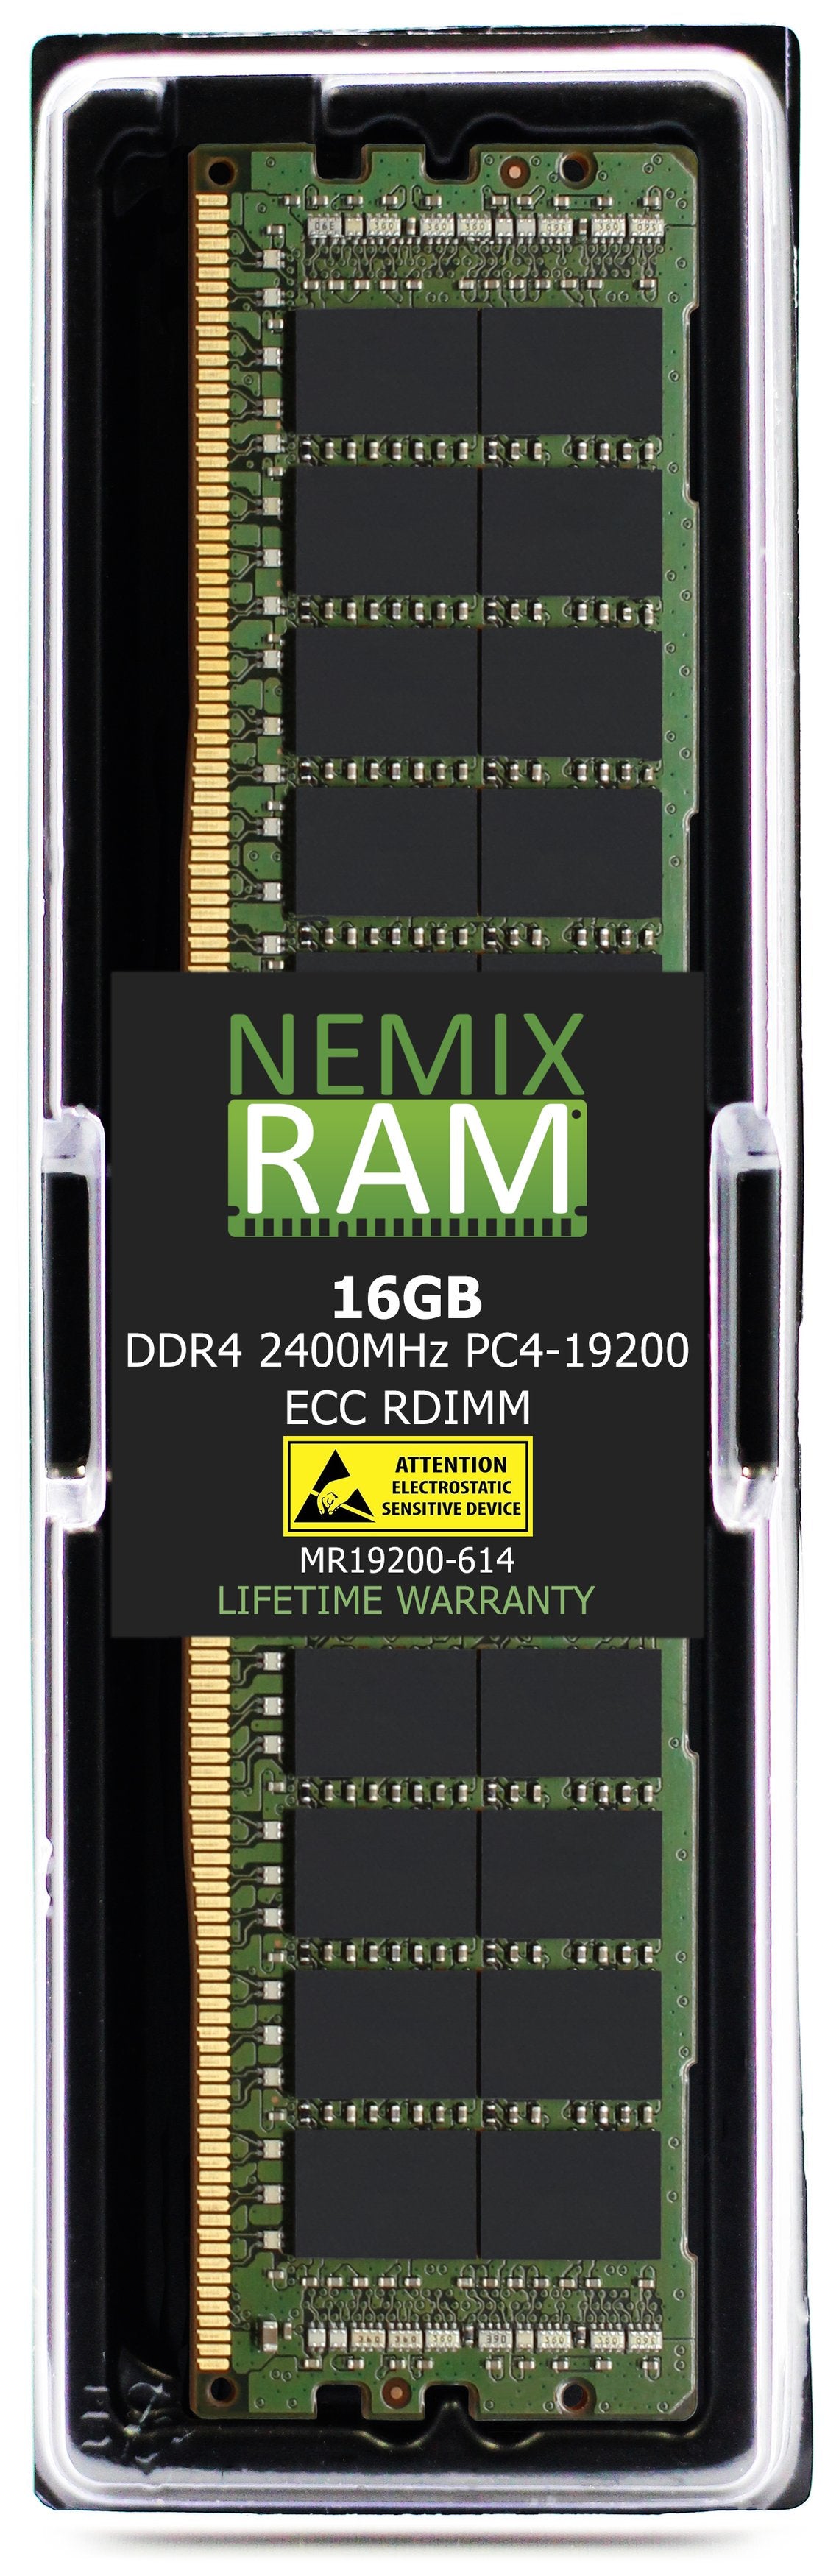 NEC Express5800 R120g Memory Module N8102-688F 16GB DDR4 2400MHZ PC4-19200 RDIMM